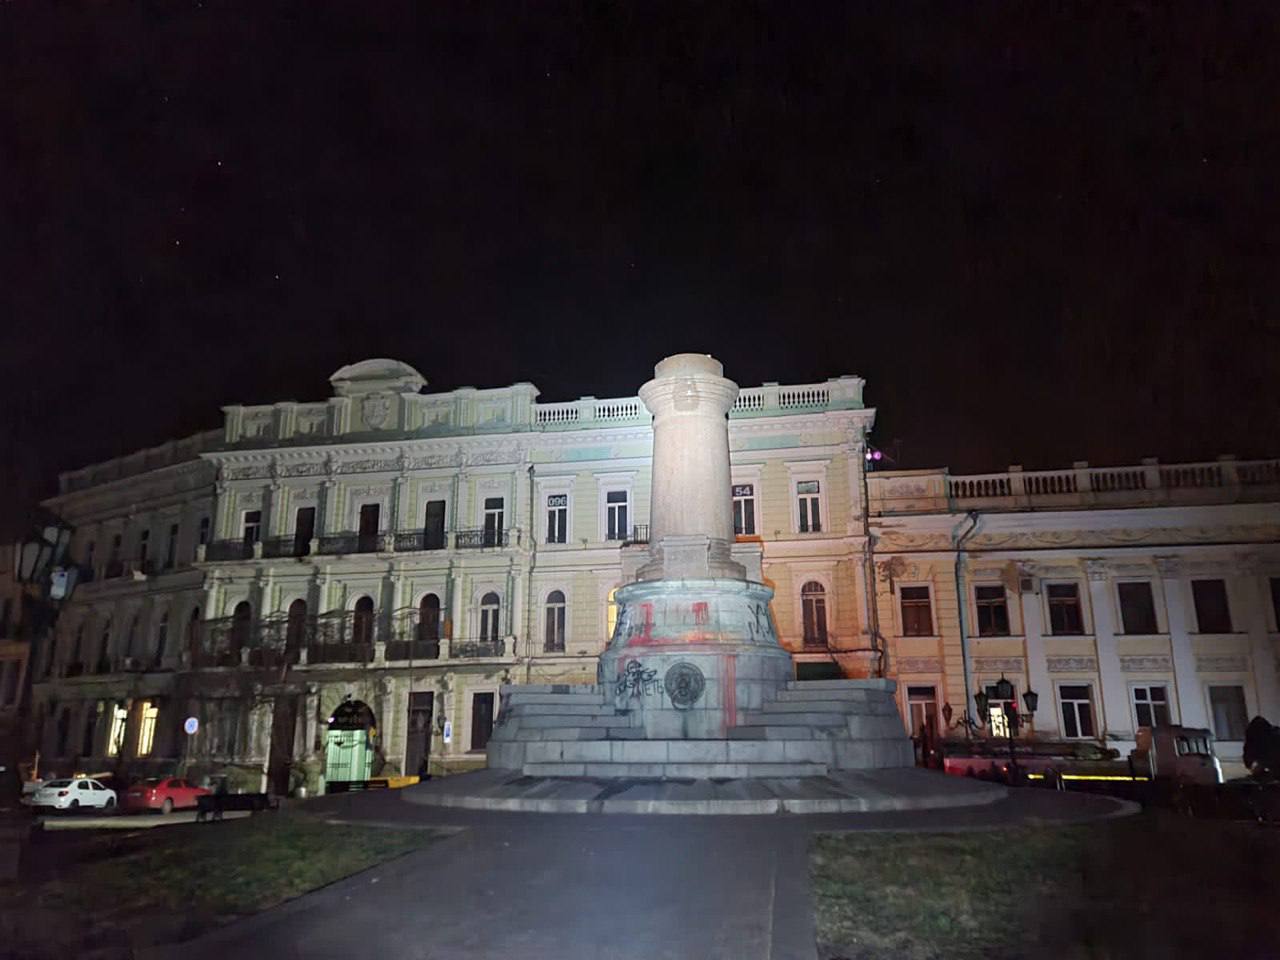 Подробнее о "В Одессе демонтировали памятники Екатерине II"